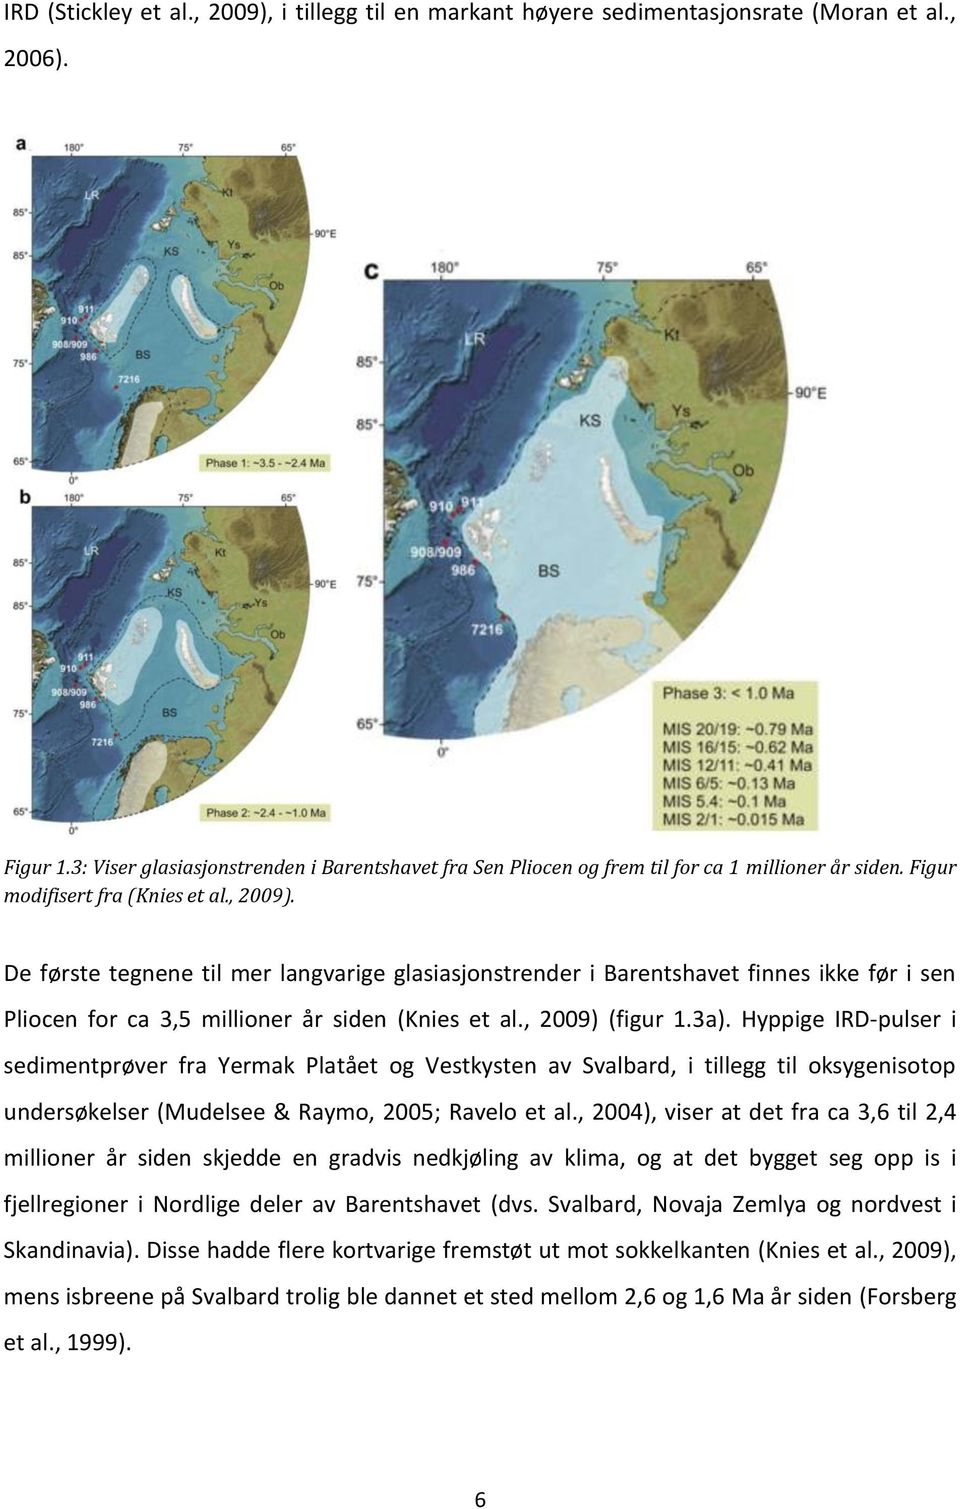 De første tegnene til mer langvarige glasiasjonstrender i Barentshavet finnes ikke før i sen Pliocen for ca 3,5 millioner år siden (Knies et al., 2009) (figur 1.3a).